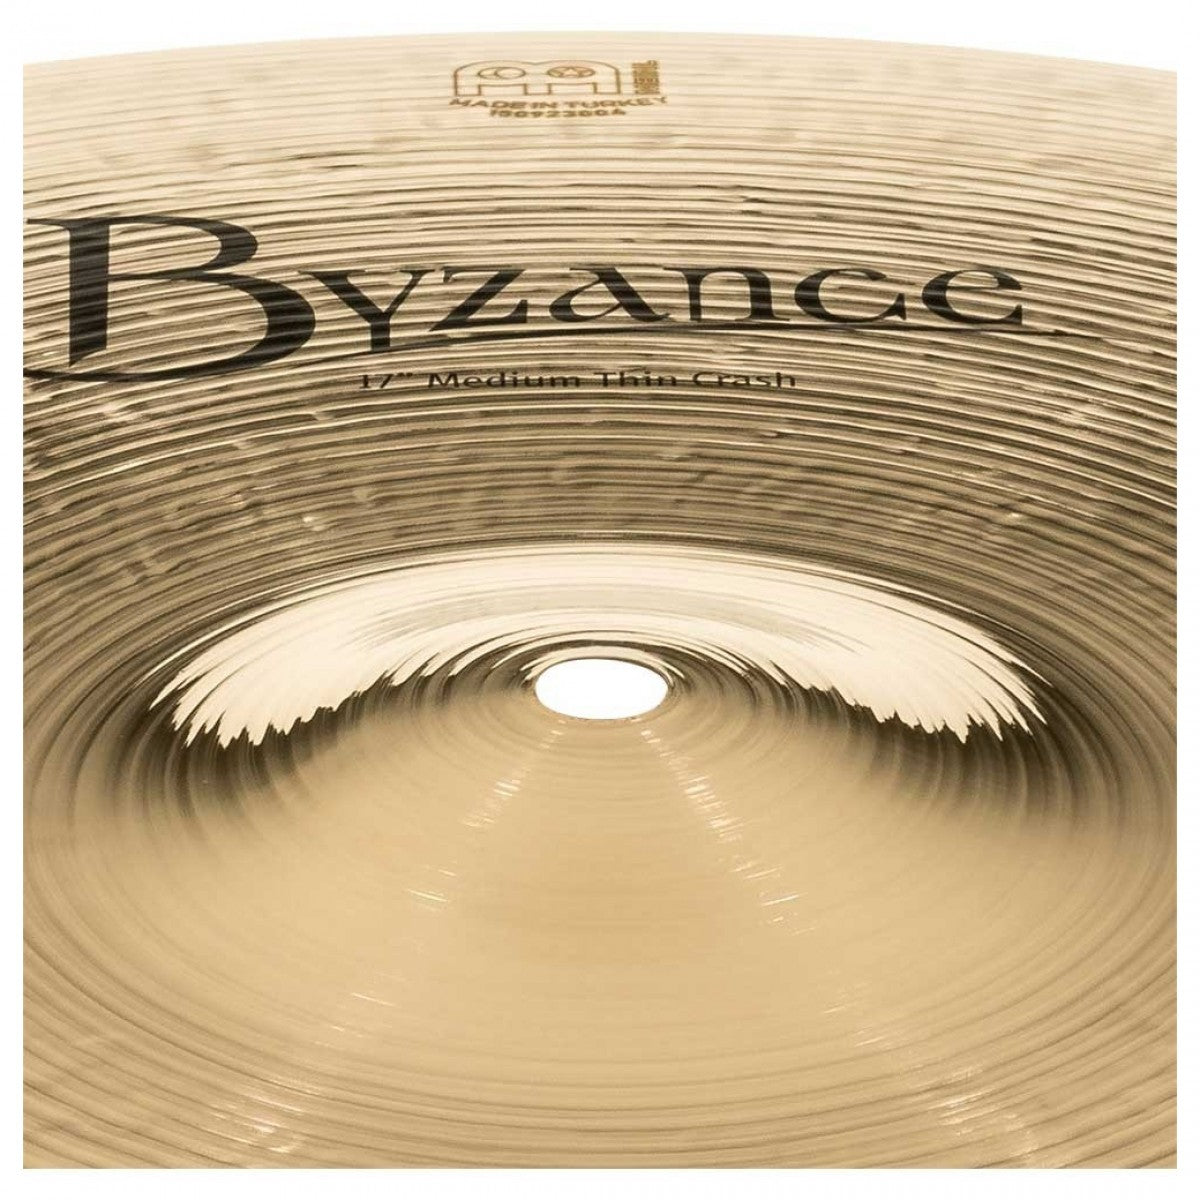 Cymbal Meinl Byzance Brilliant 17" Medium Thin Crash - B17MTC-B - Việt Music